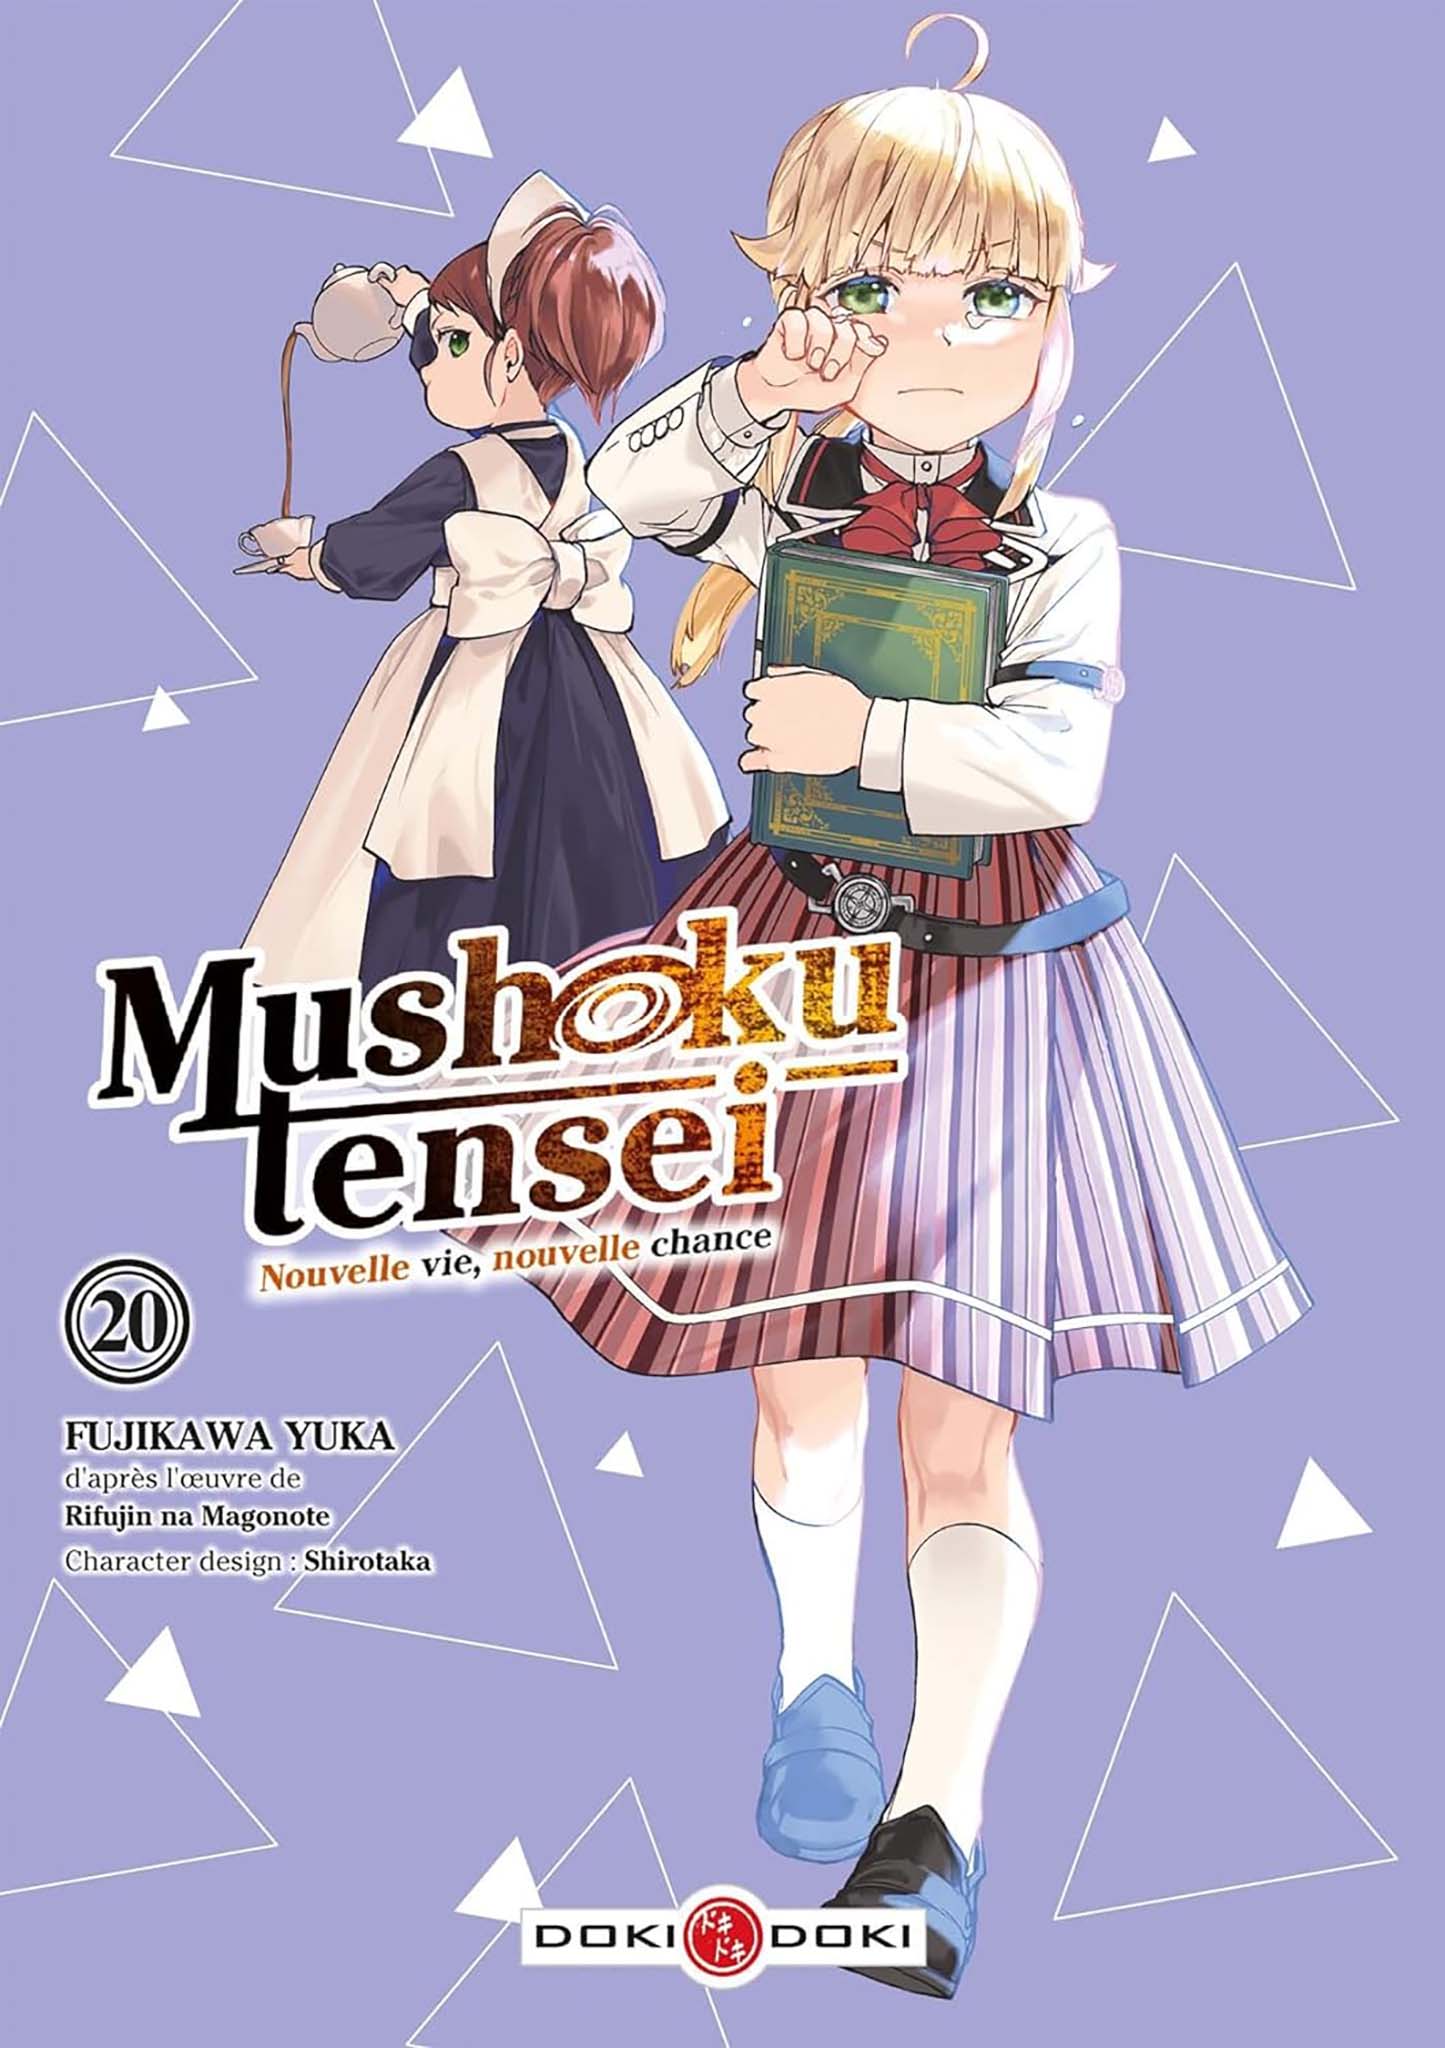 Tome 20 du manga Mushoku Tensei.